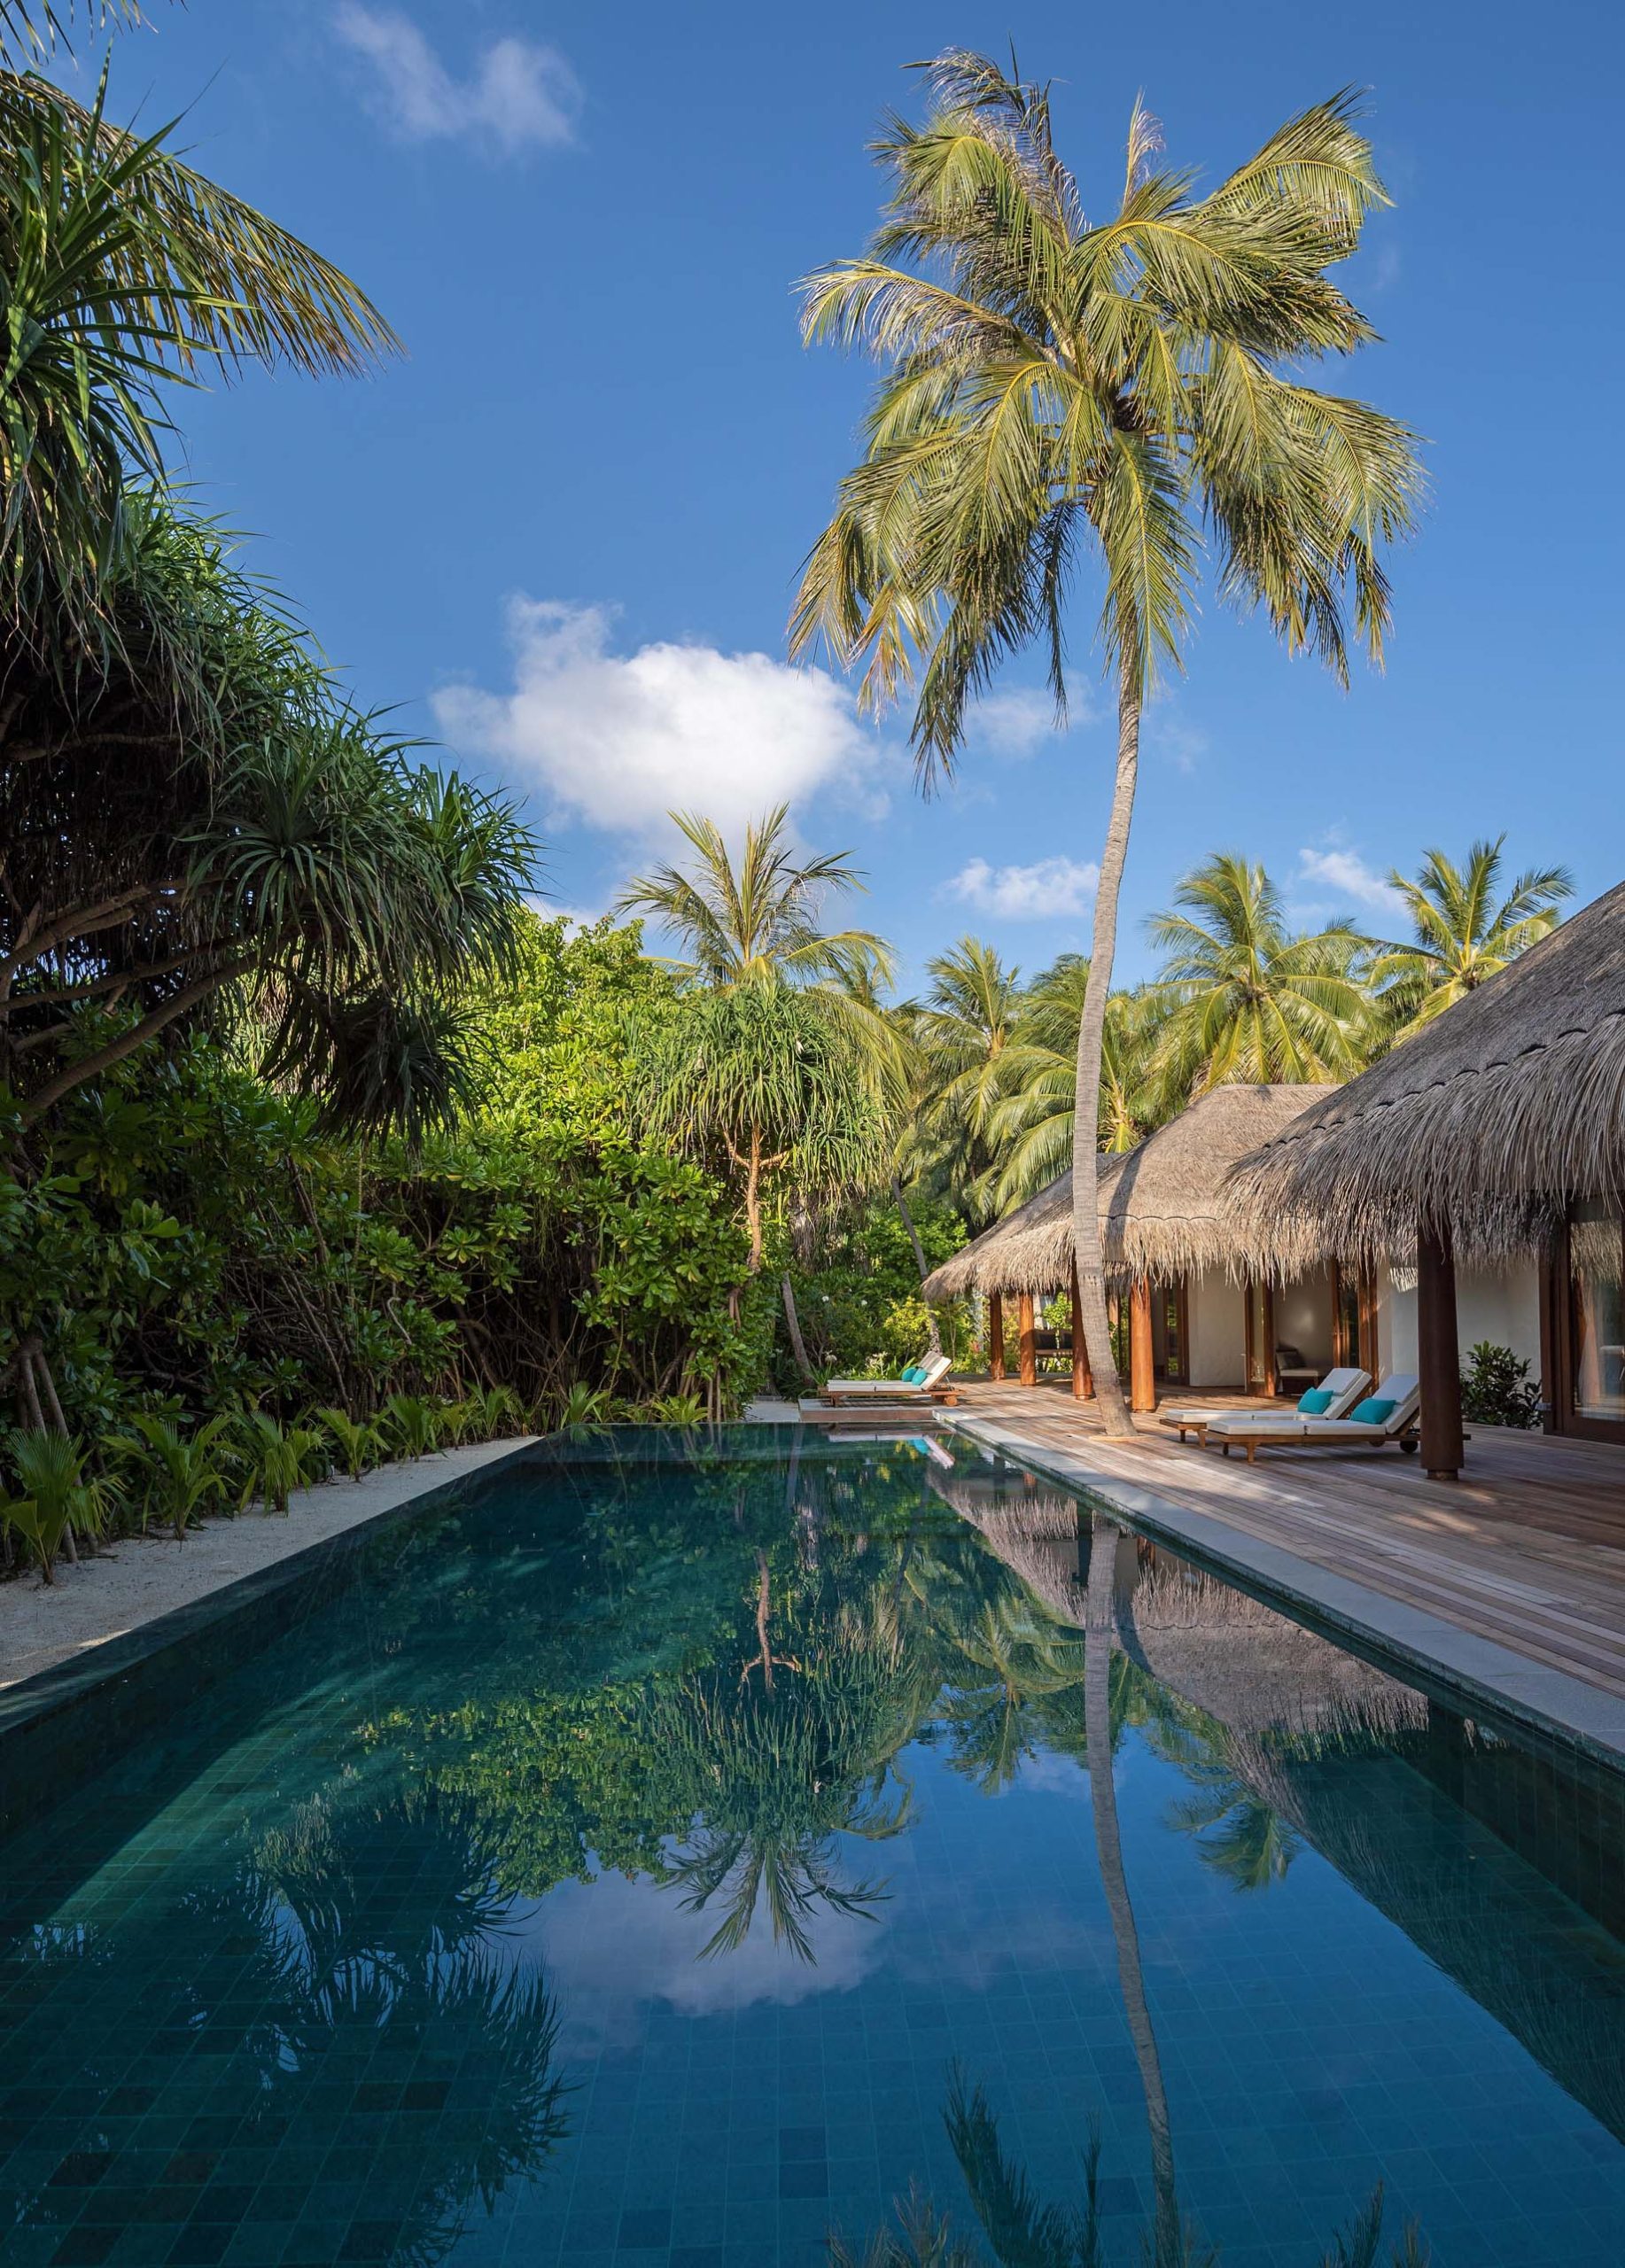 Anantara Kihavah Maldives Villas Resort – Baa Atoll, Maldives – Beach Pool Residence Pool View